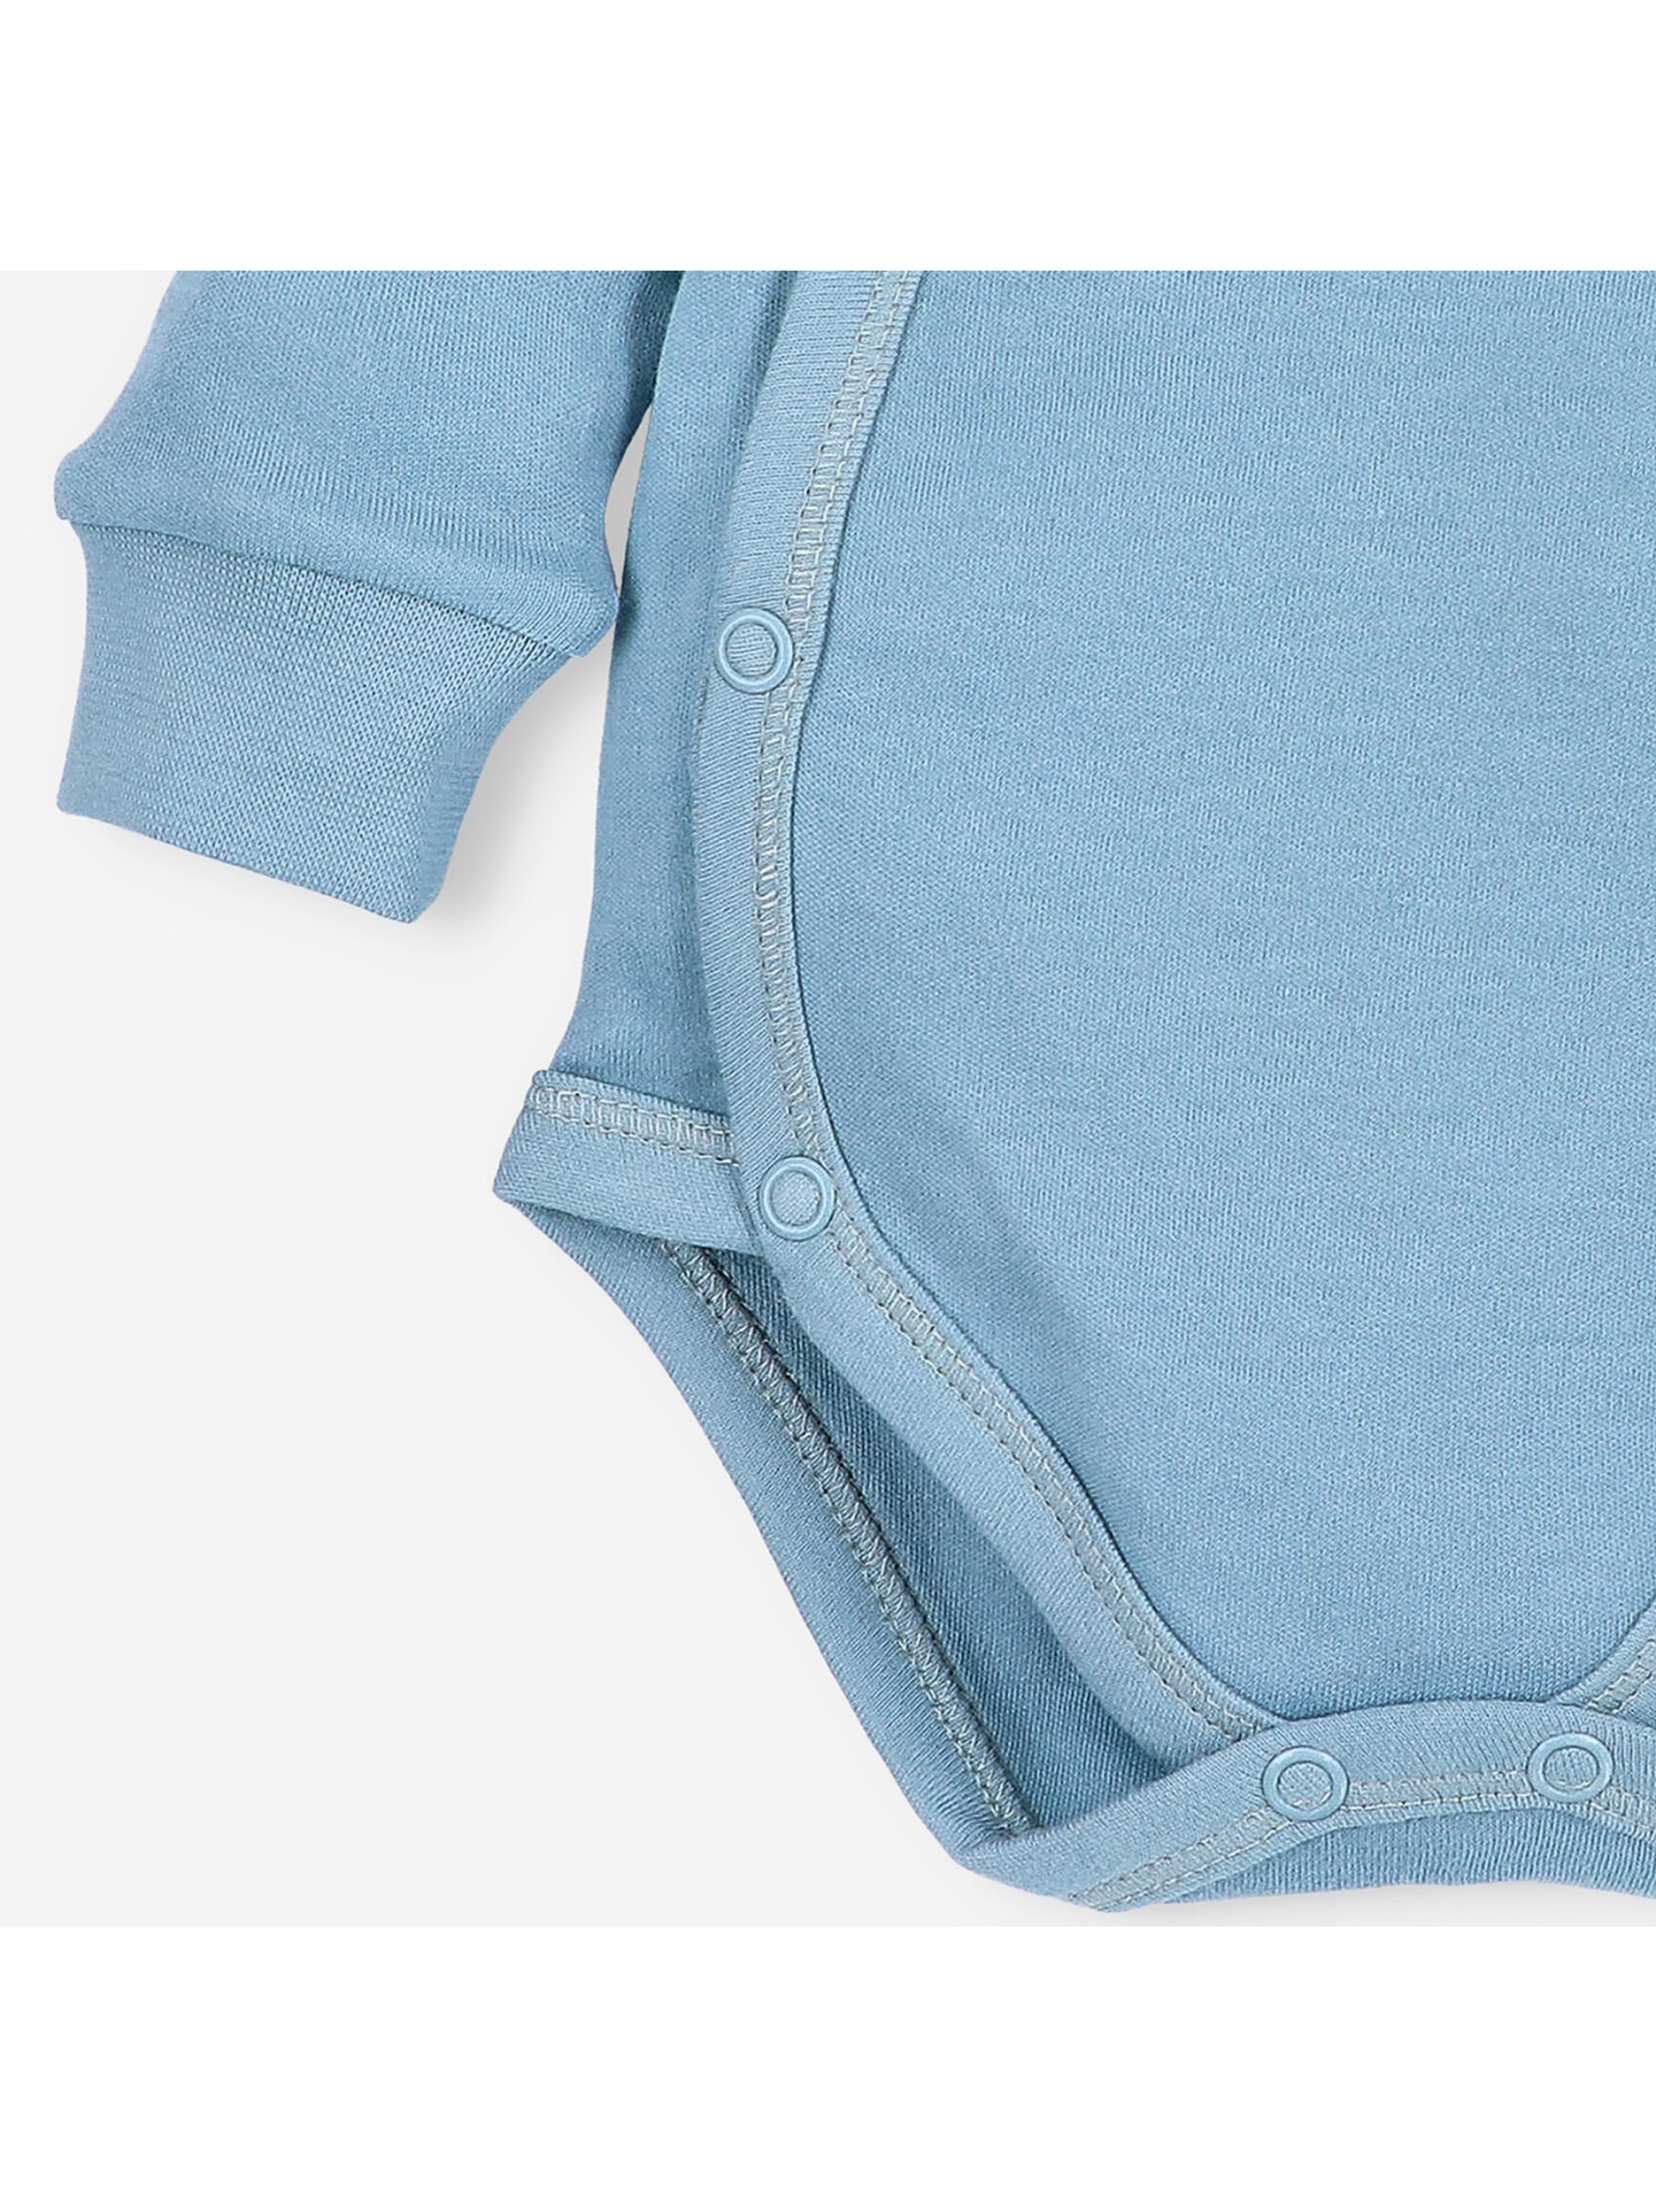 Body niemowlęce z bawełny organicznej - niebieskie